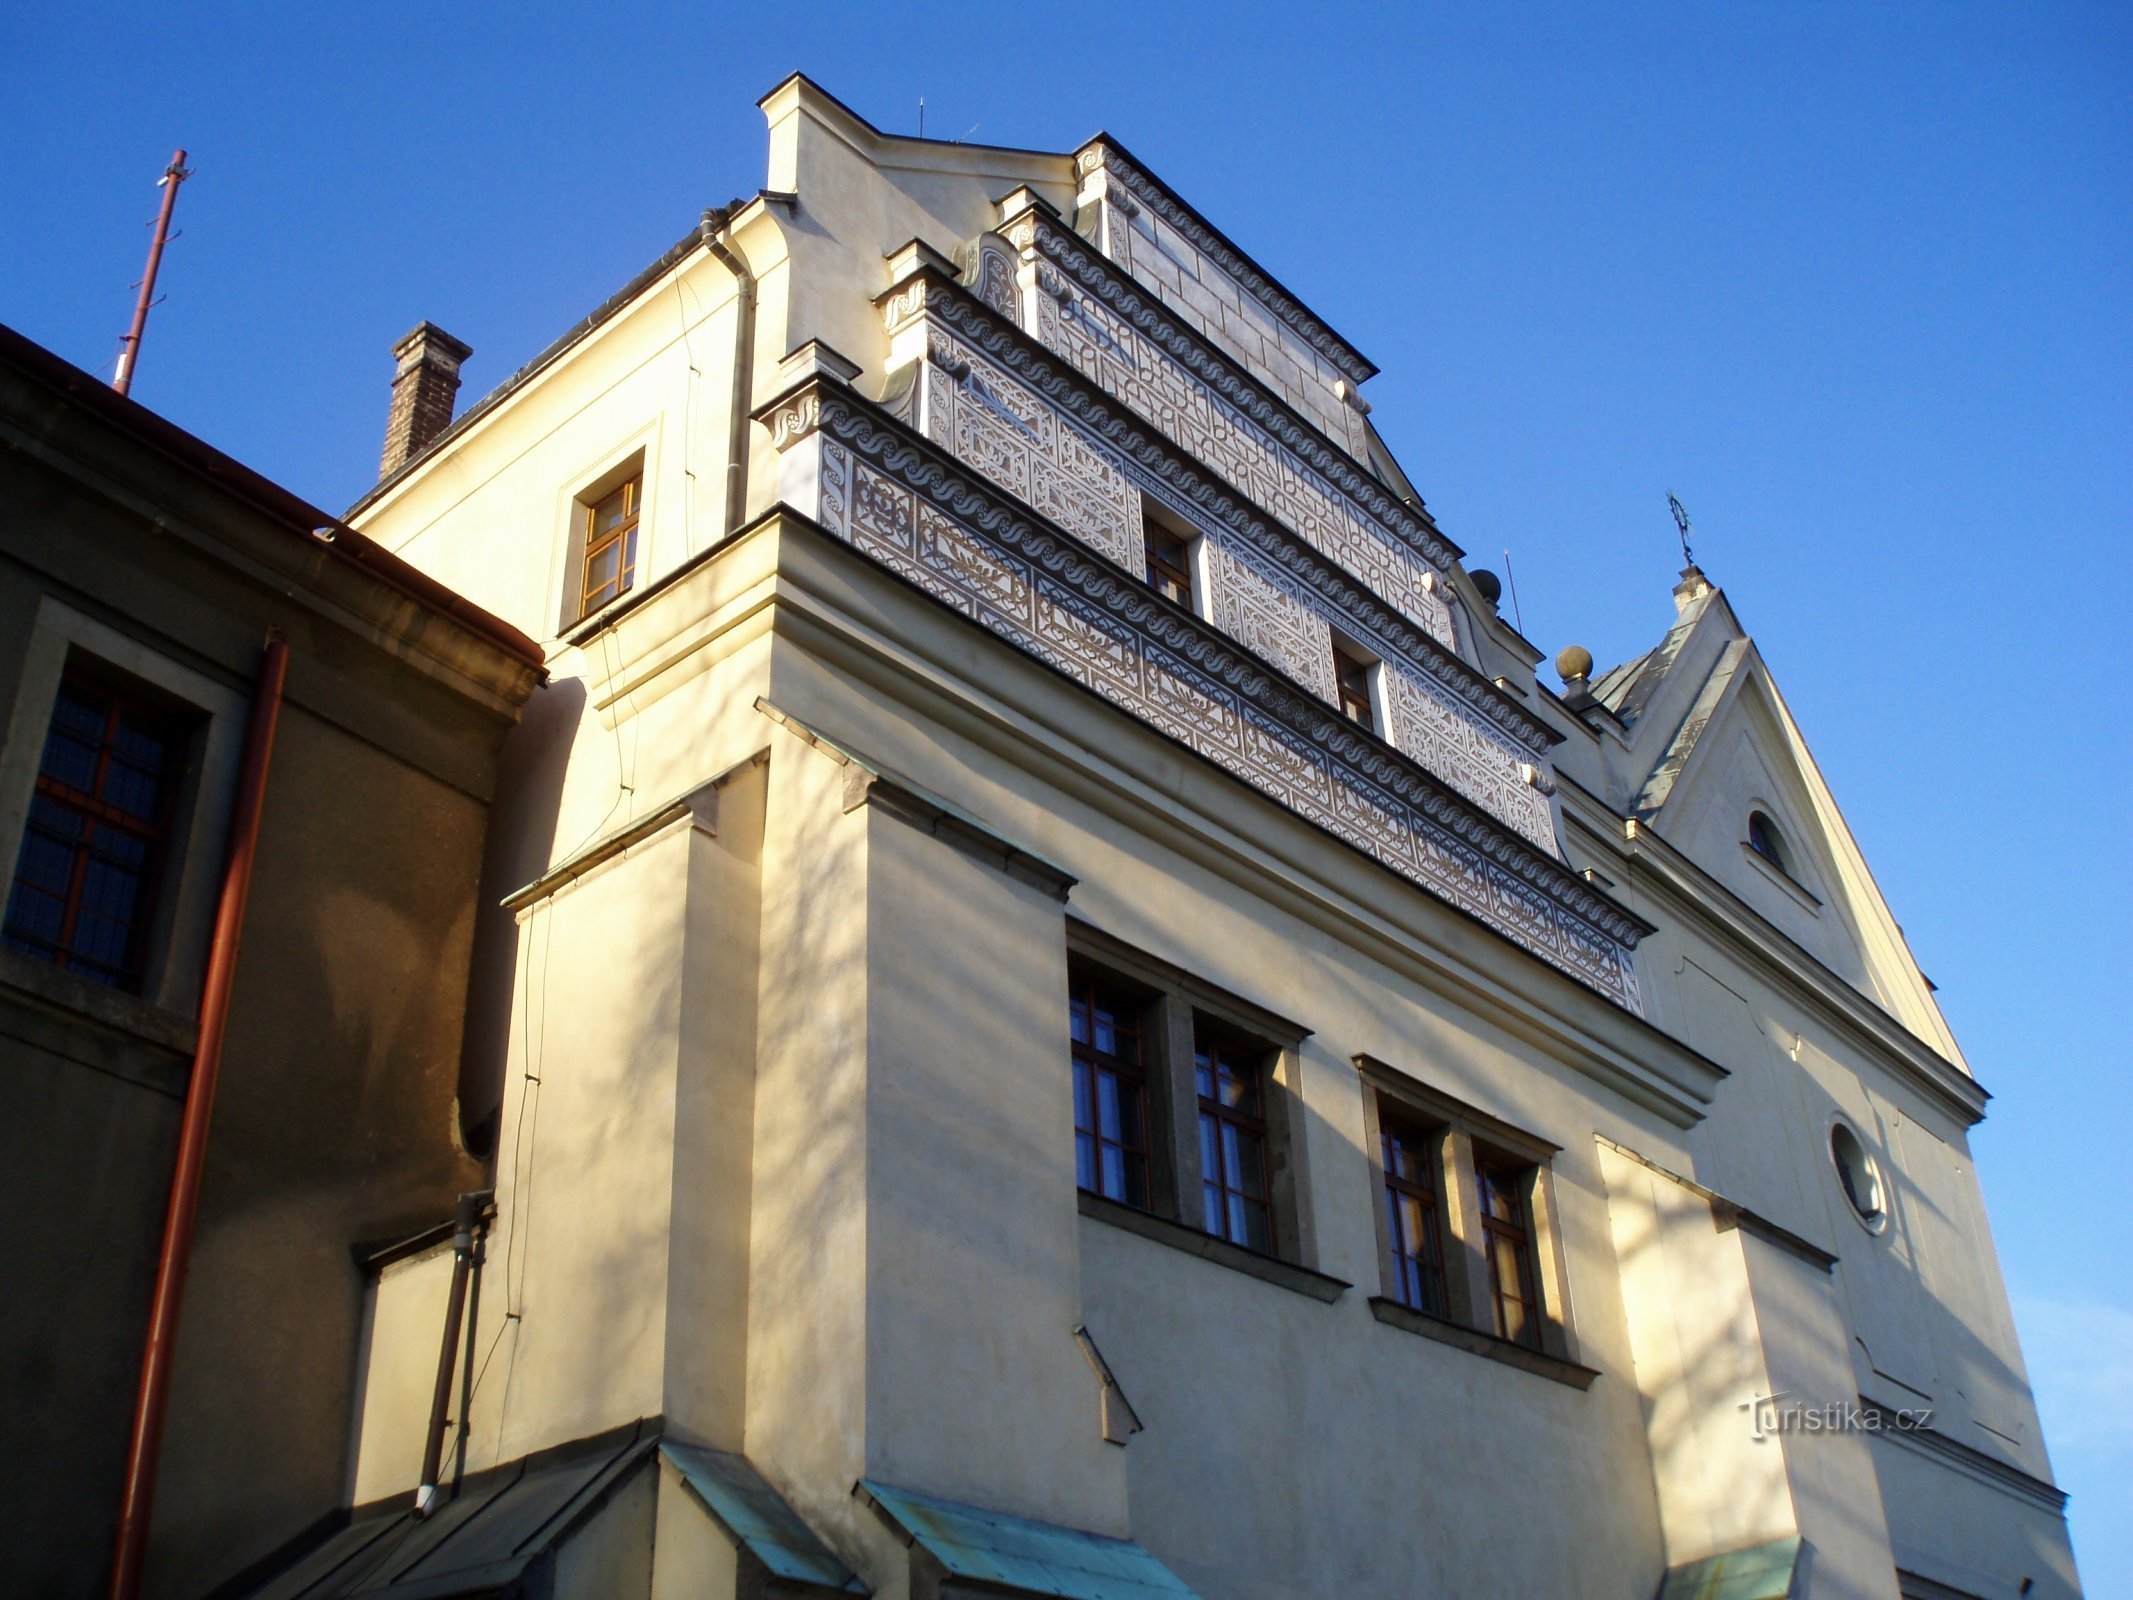 Purkrab House (Hradec Králové, 4.4.2010. huhtikuuta XNUMX)